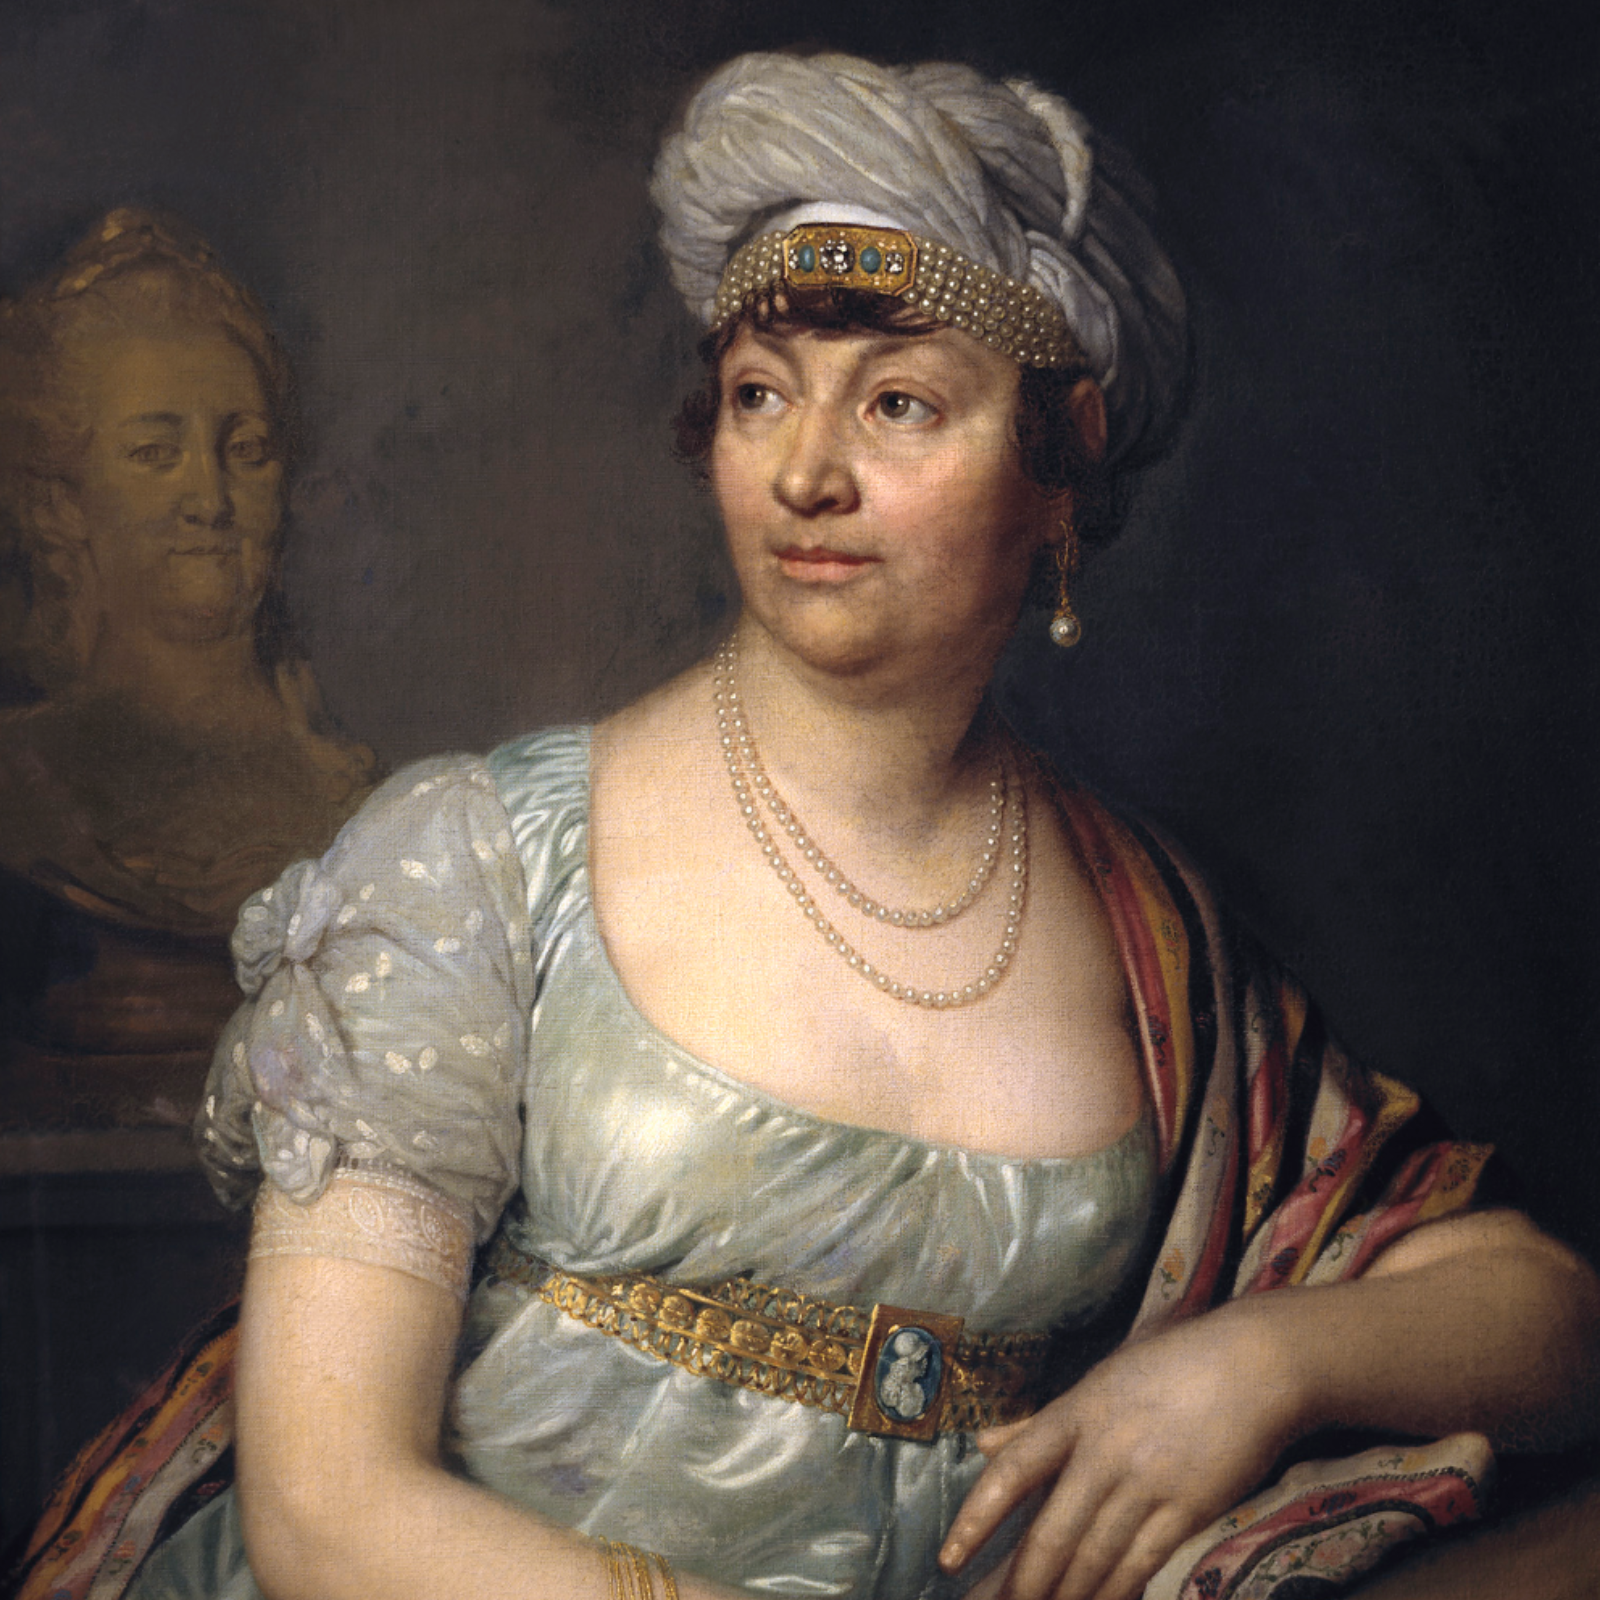 Портрет мадам де Сталь работы Владимира Боровиковского, 1812 год.